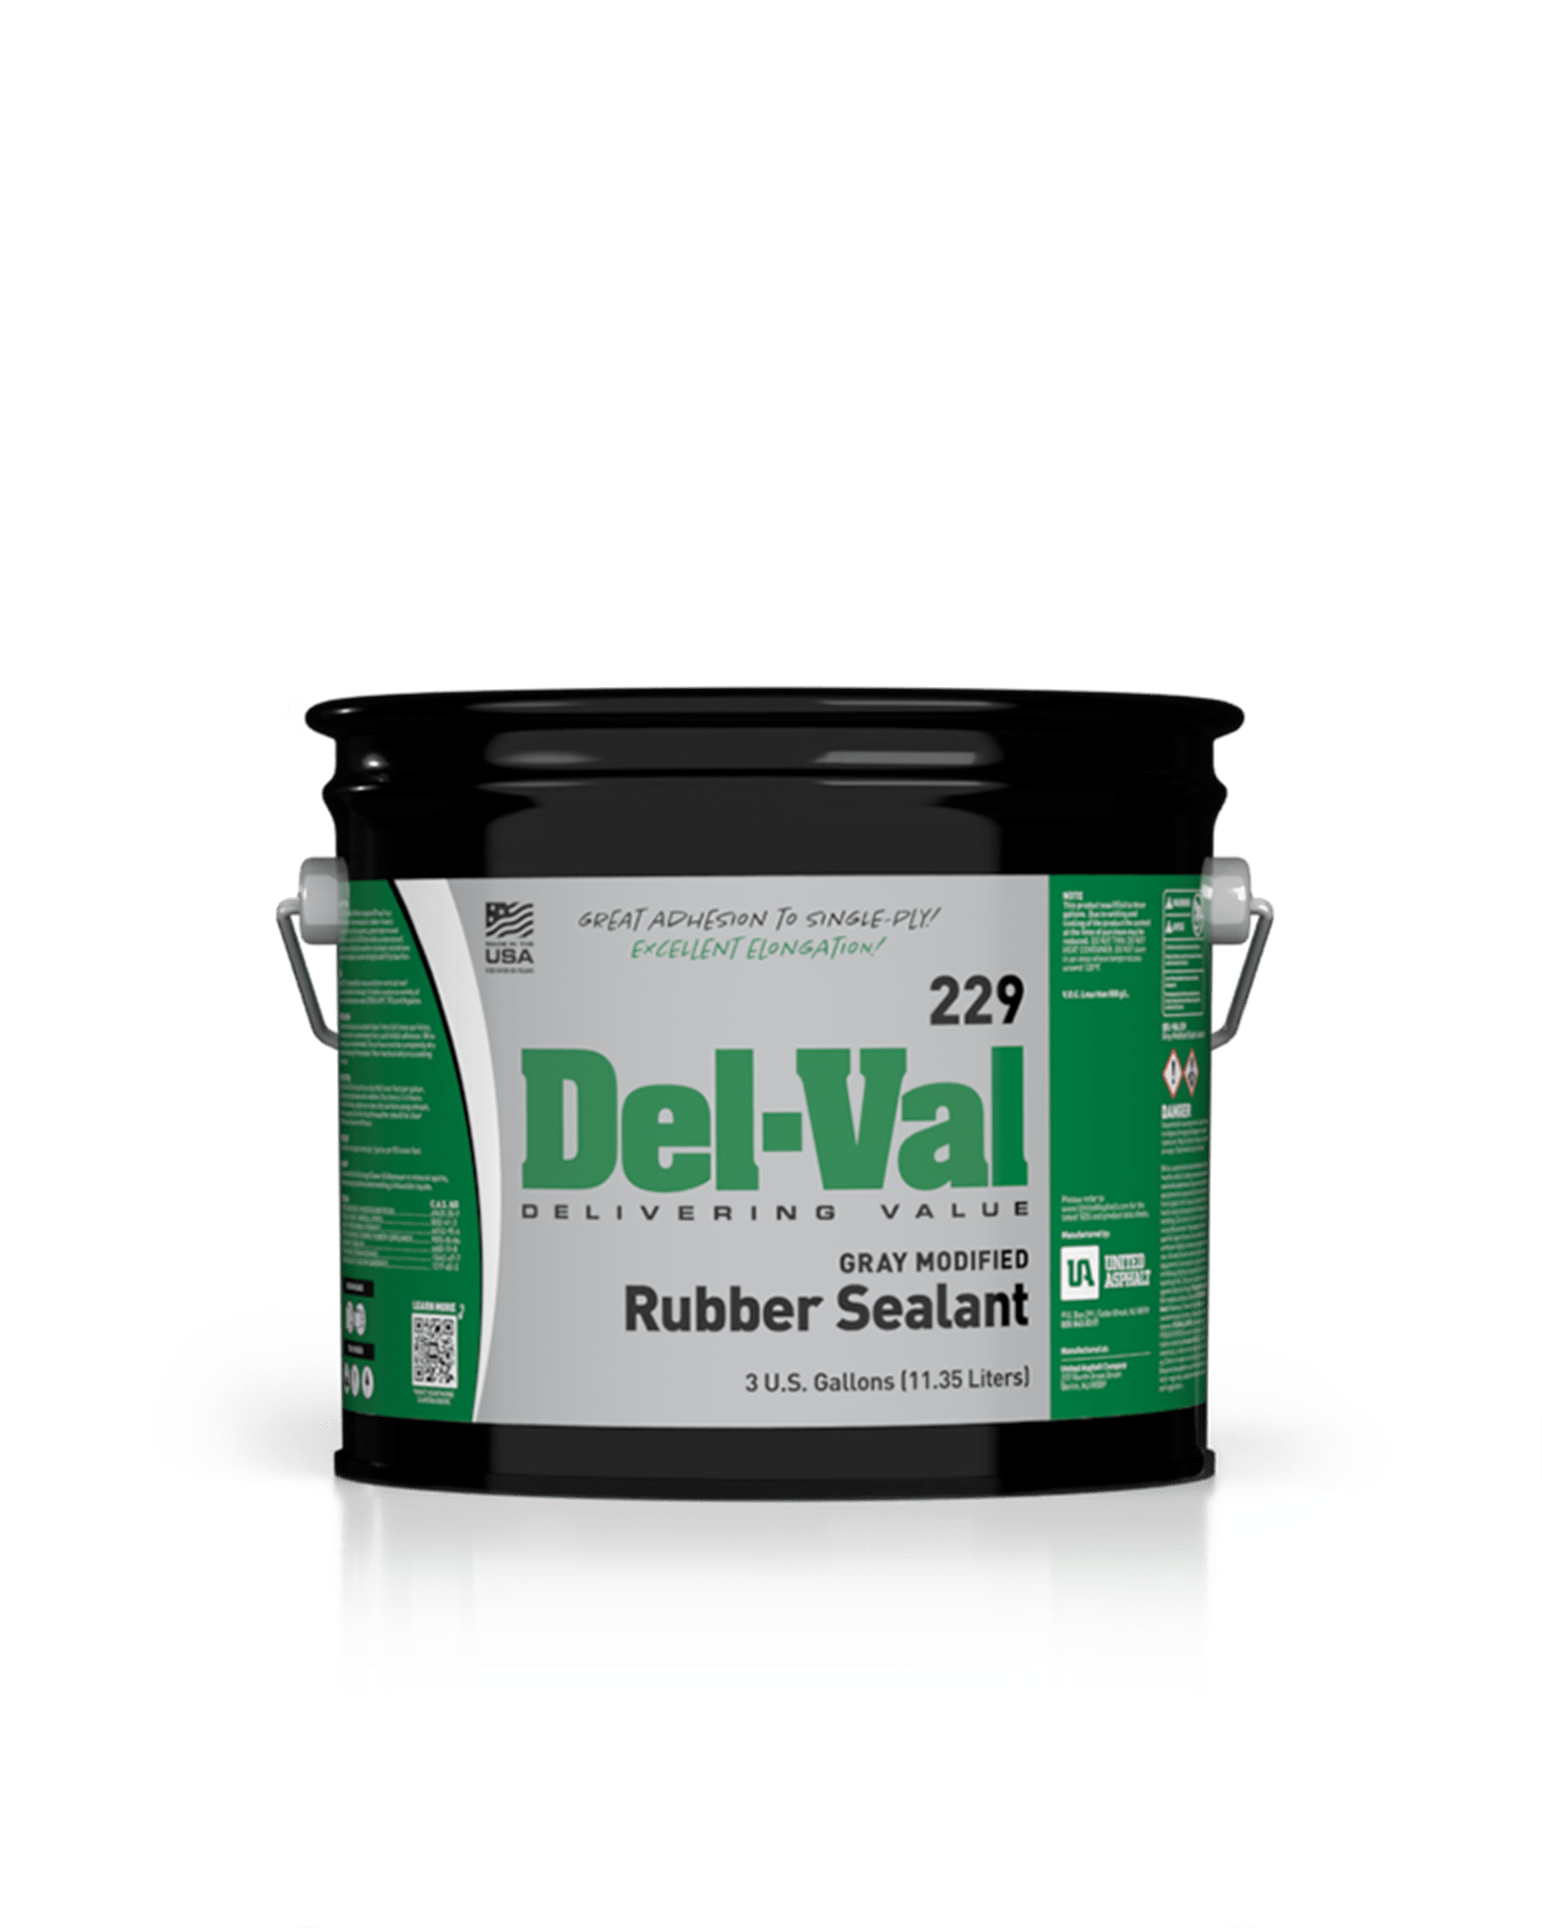 Del-Val 229 Gray Modified Rubber Sealant in 3 Gallon Pail